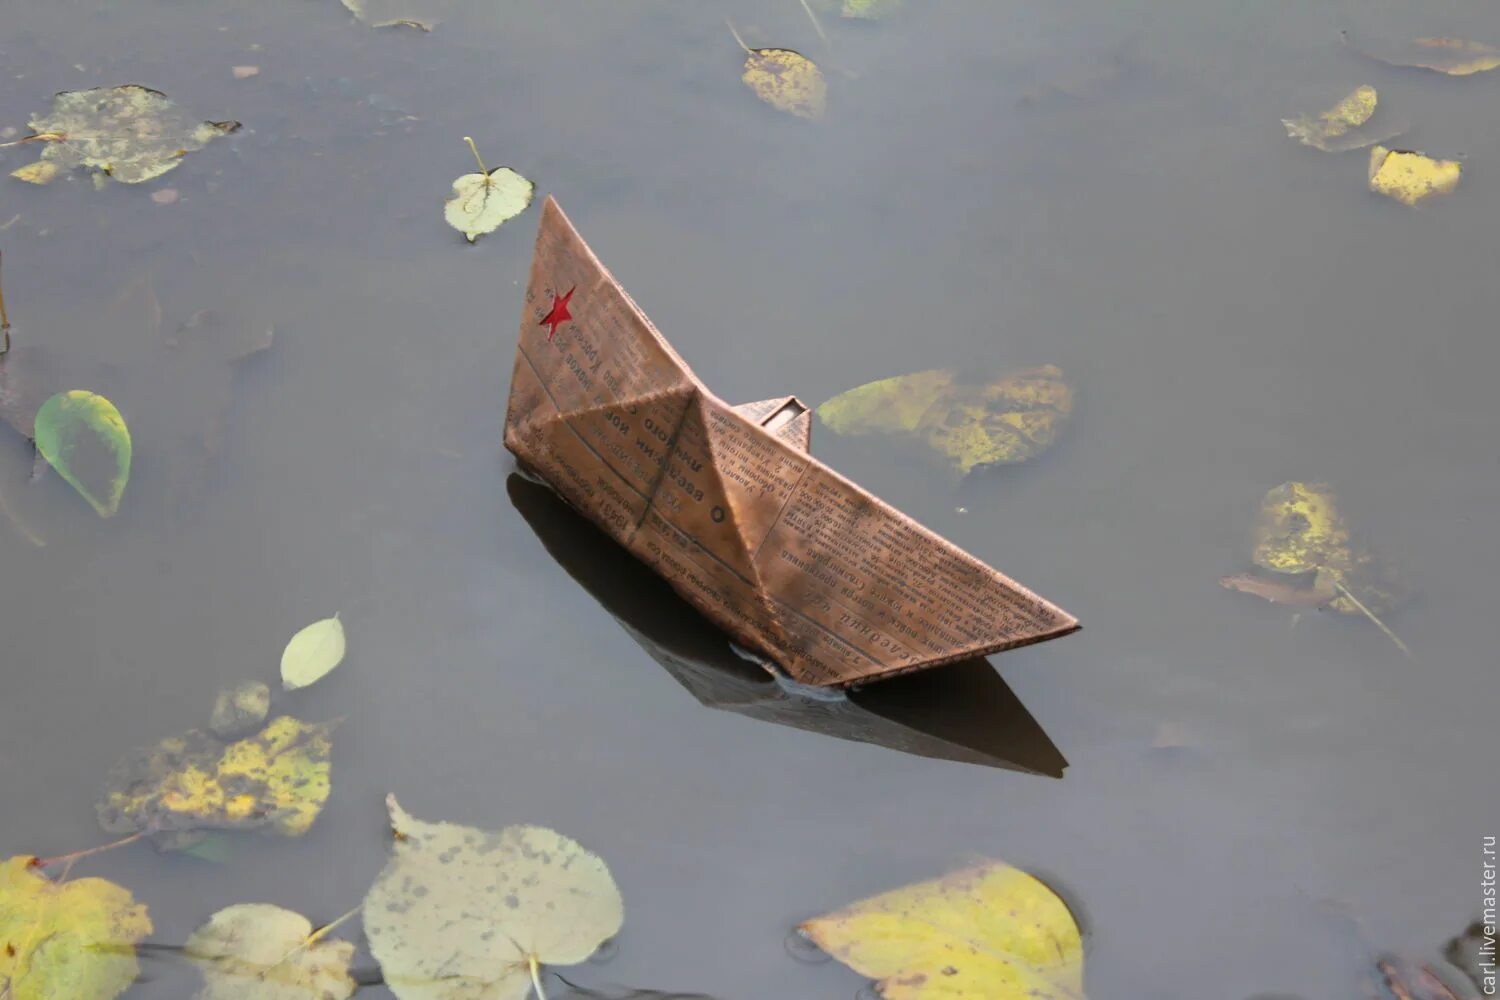 Кораблик из бумаги я по ручью пустил. Бумажный кораблик. Кораблик из листьев. Бумажный кораблик в ручье. Кораблик из листика.